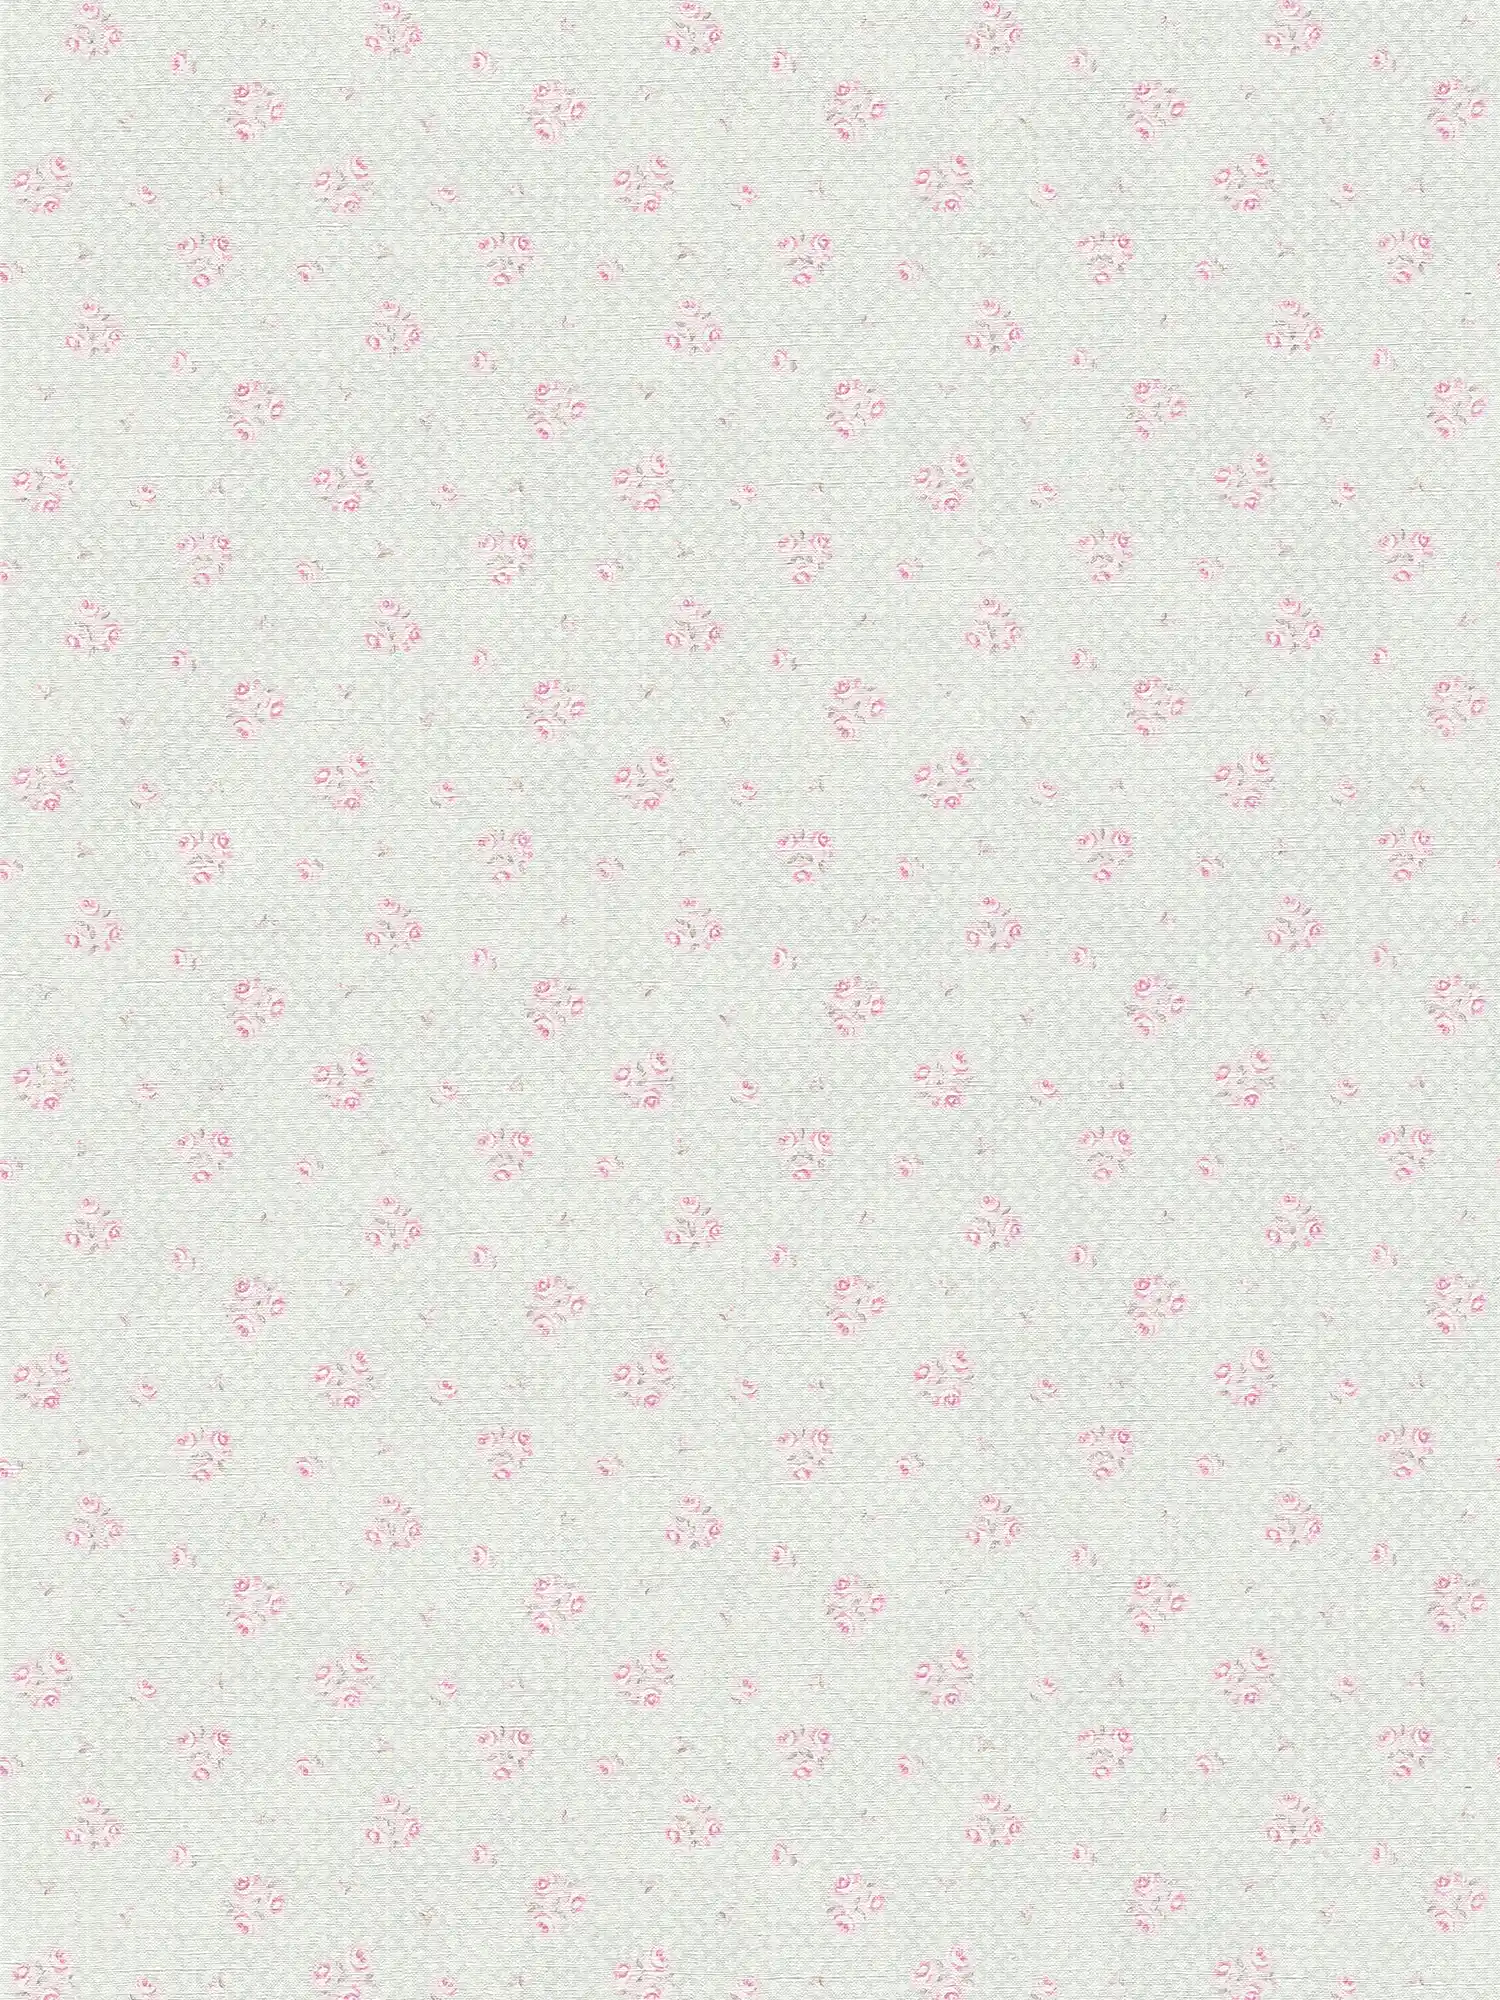 Carta da parati in tessuto non tessuto con motivo floreale in stile Shabby Chic - grigio, rosa, bianco
